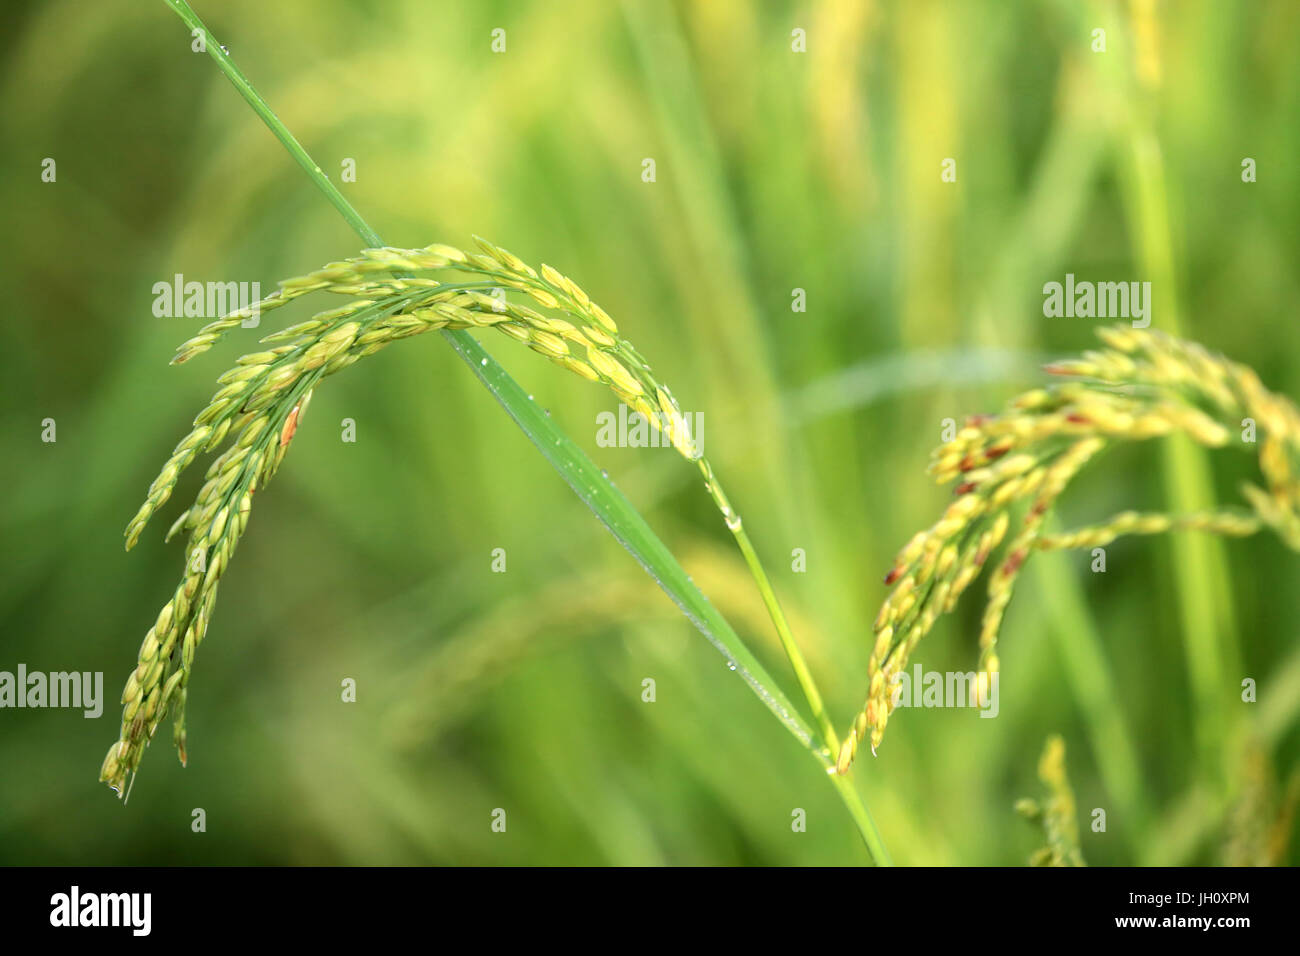 L'agricoltura. Close up della coltura del riso in un campo di risone. Laos. Foto Stock